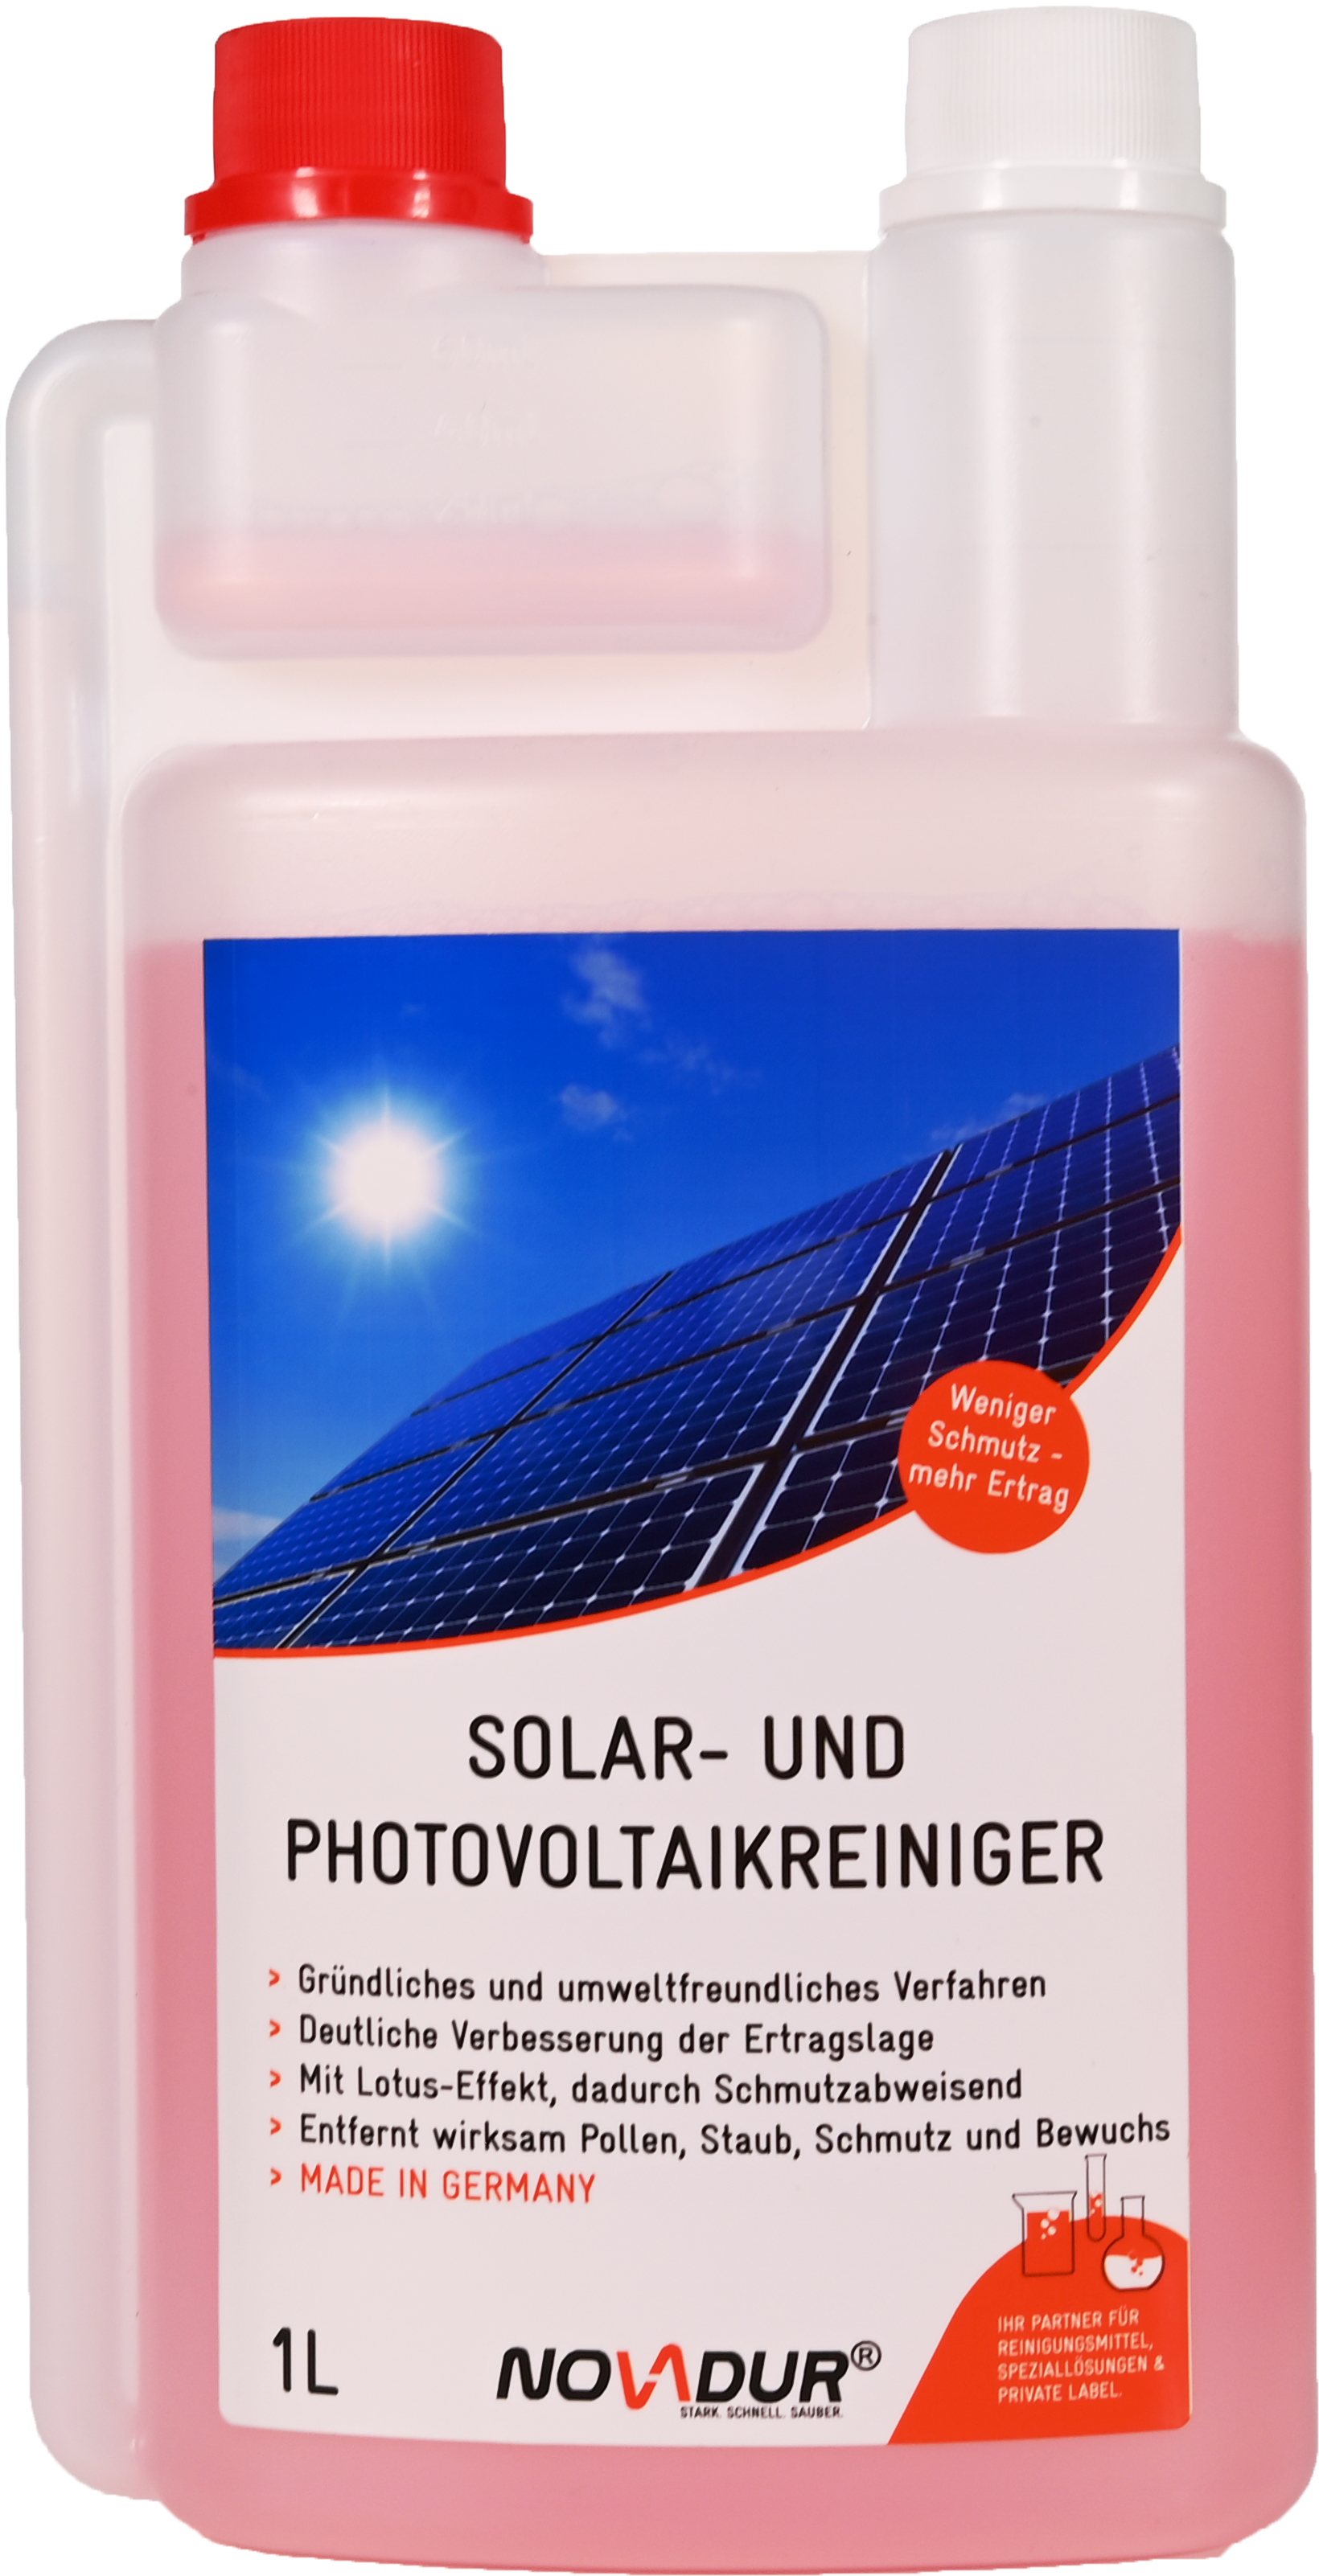 Solar- und Photovoltaikreiniger